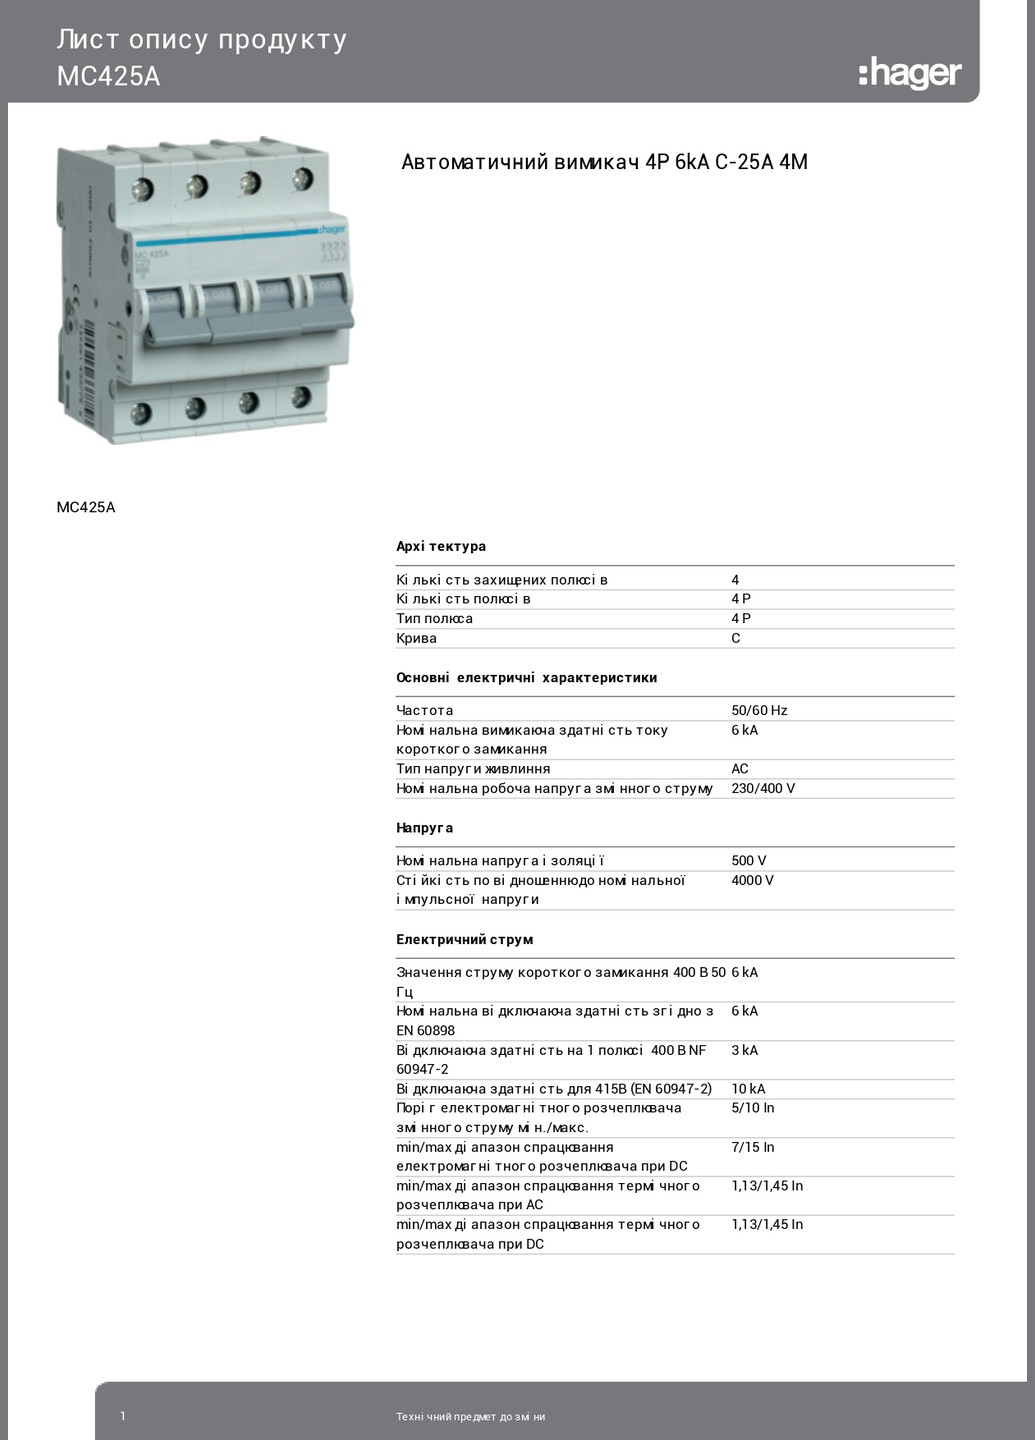 Вводный автомат четырехполюсный 25А автоматический выключатель MC425A 4P 6kA C25A 4M (3843) Hager (265535363)